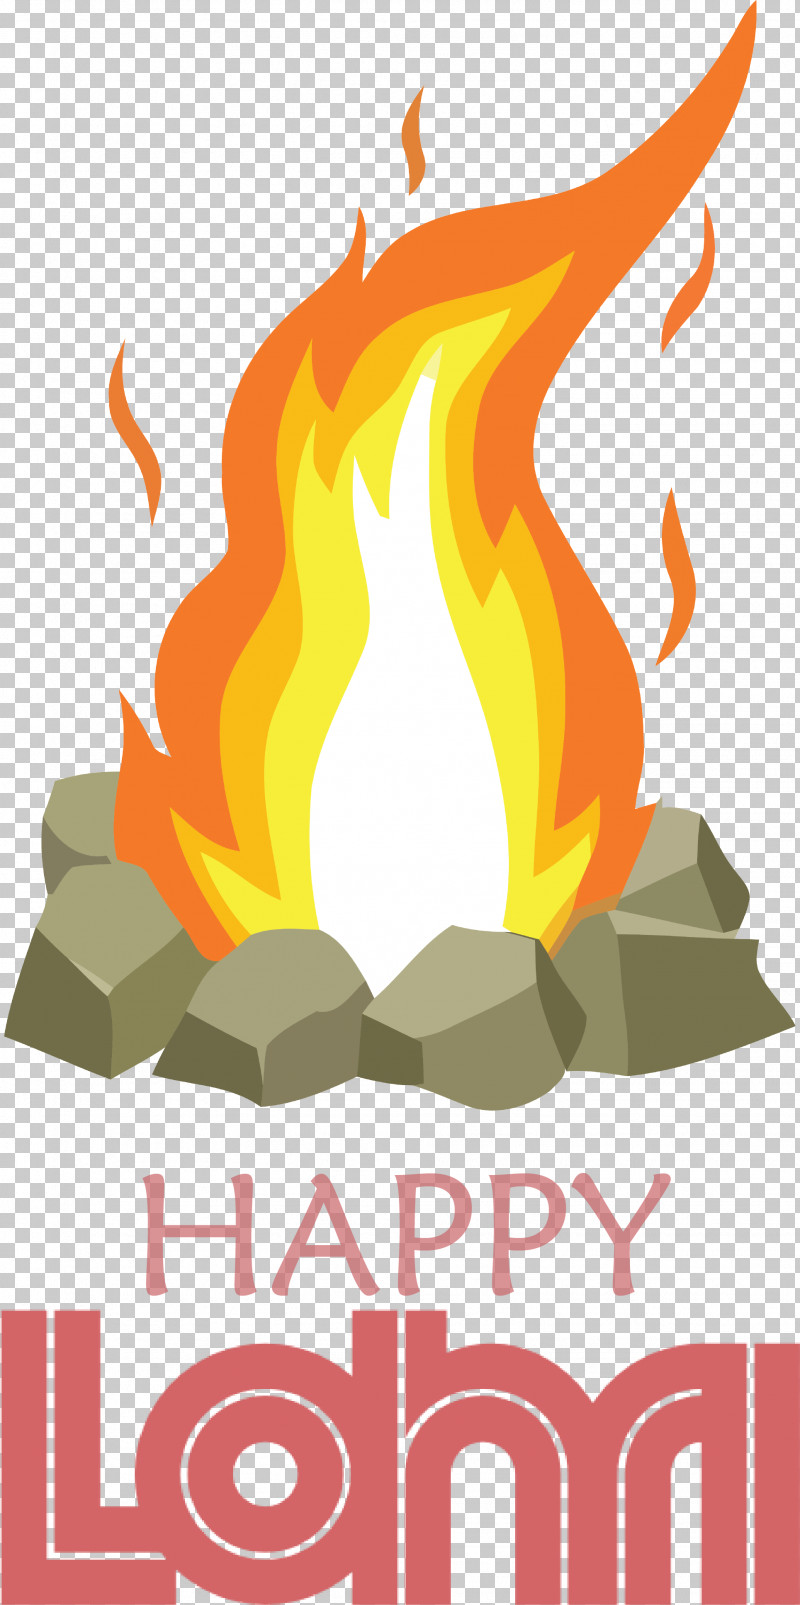 Happy Lohri PNG, Clipart, Bonfire, Campfire, Camping, Cartoon ...